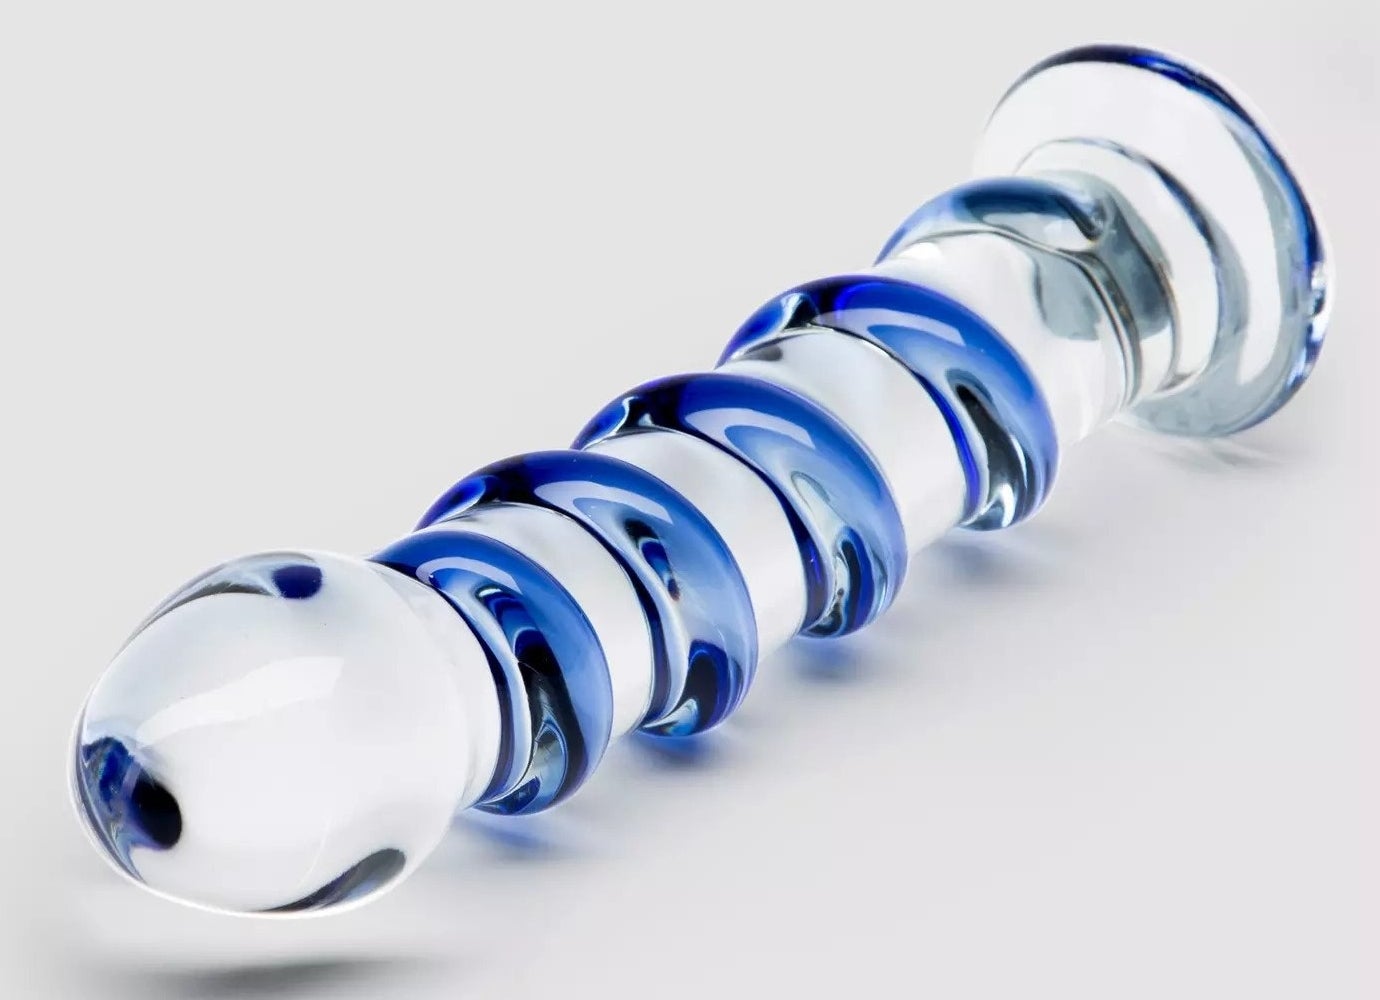 Transparent dildo with blue spiral